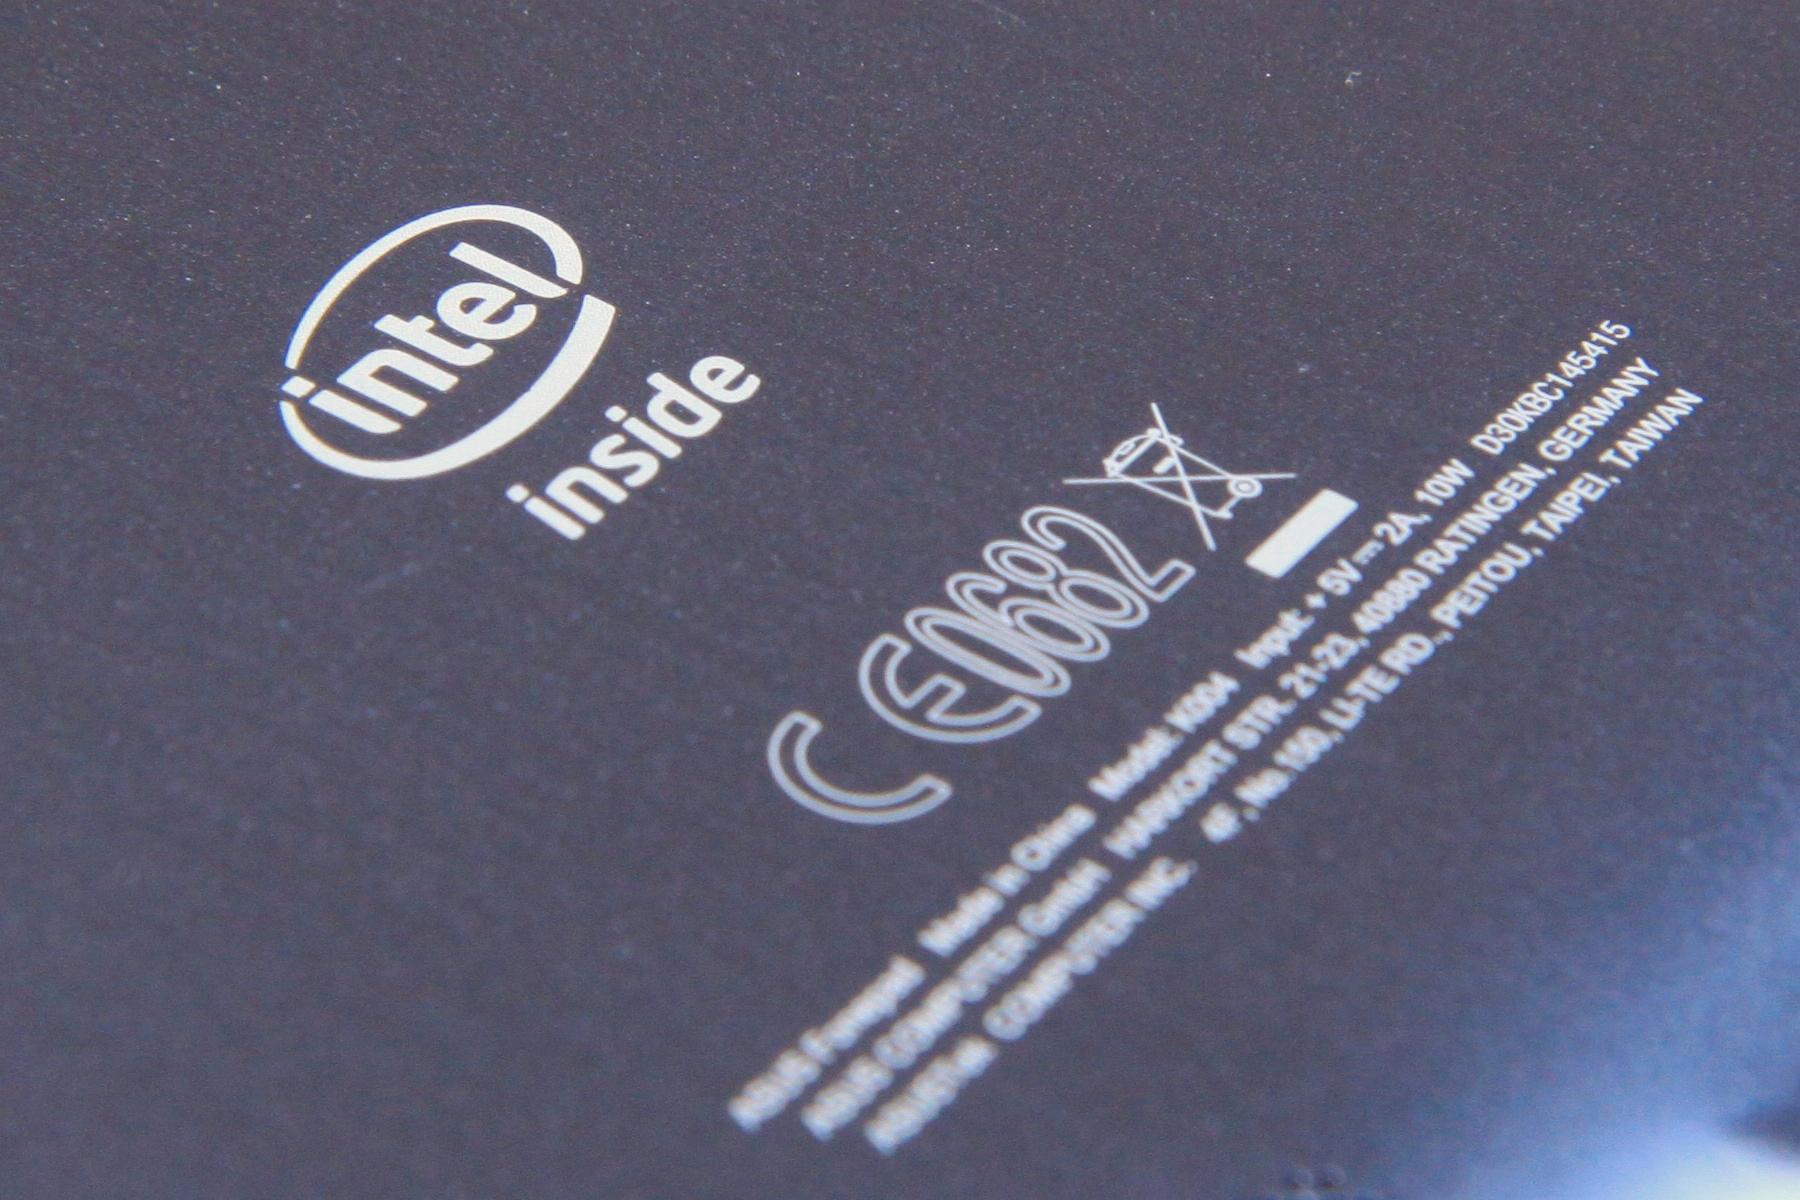 Nettbrettet har en Intel Atom-prosessor.Foto: Kurt Lekanger, Amobil.no